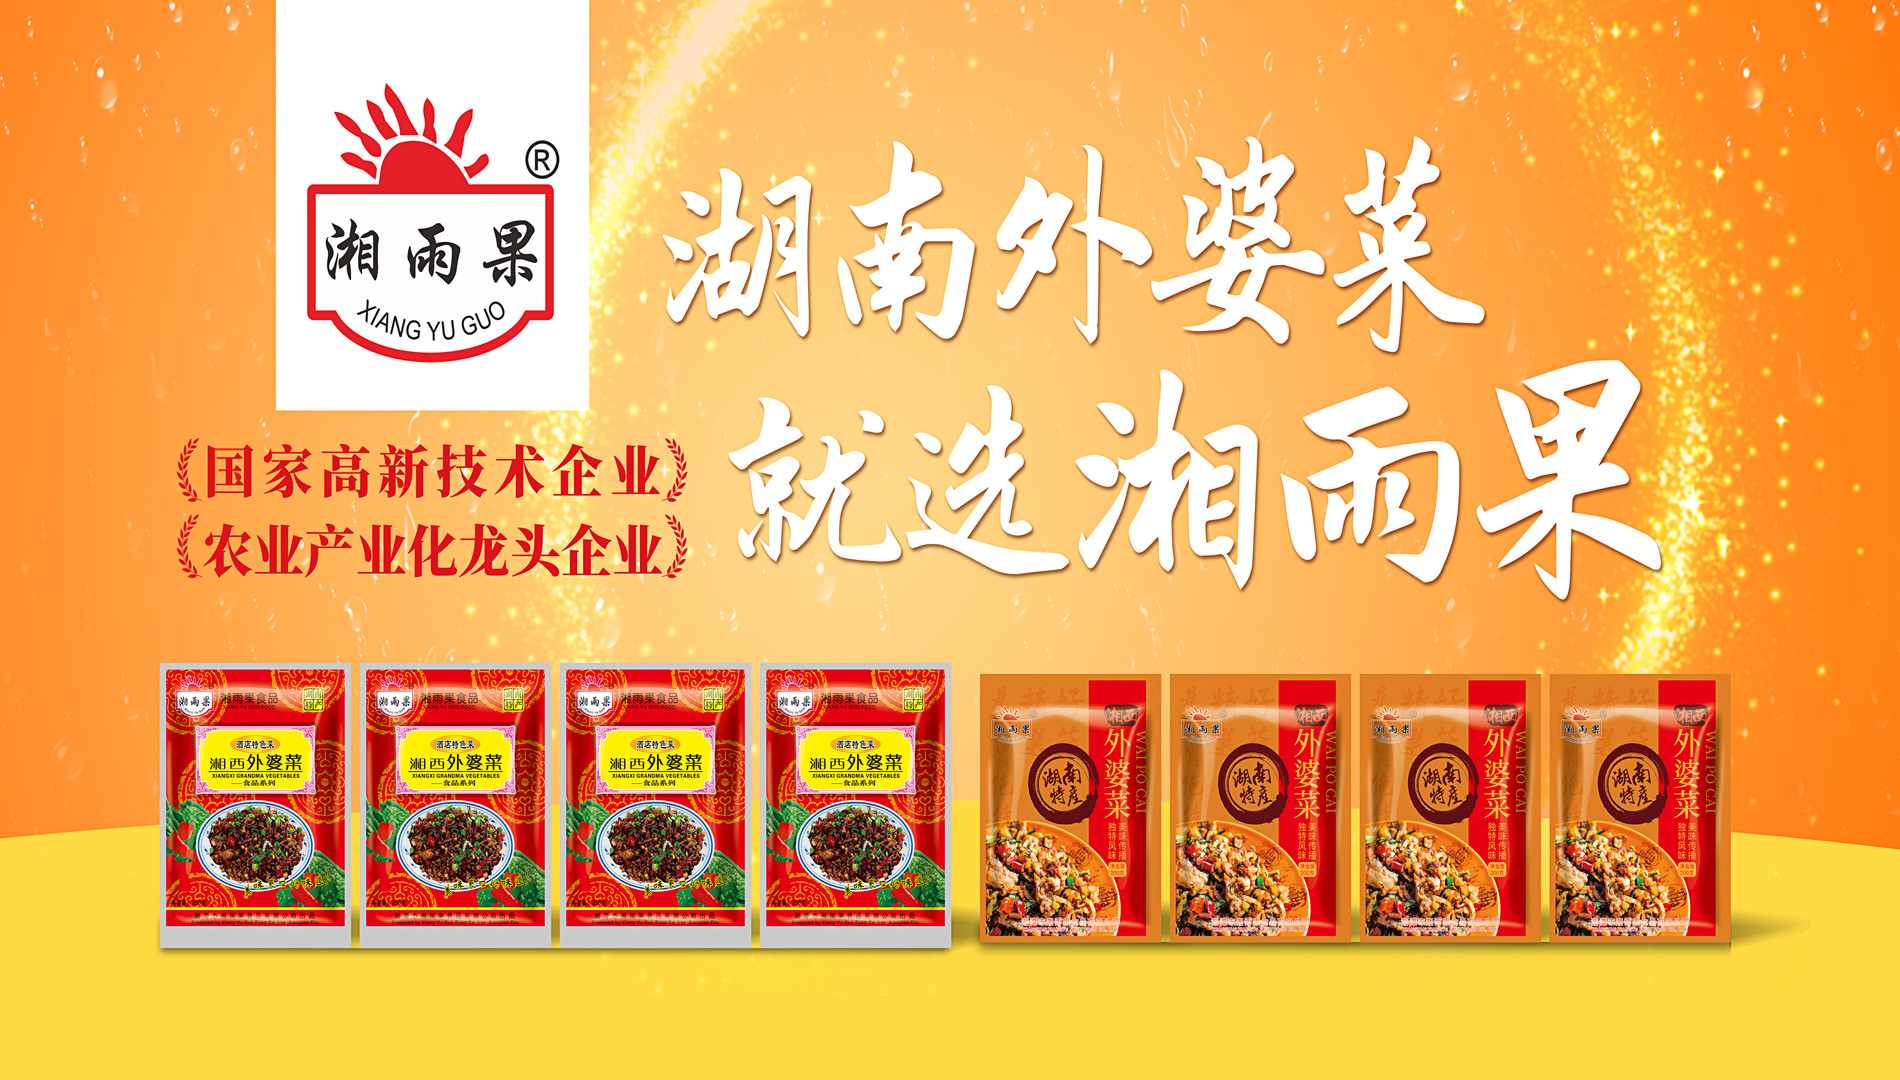 Xiang Yu Guo Food — еталонне підприємство промисловості готових страв